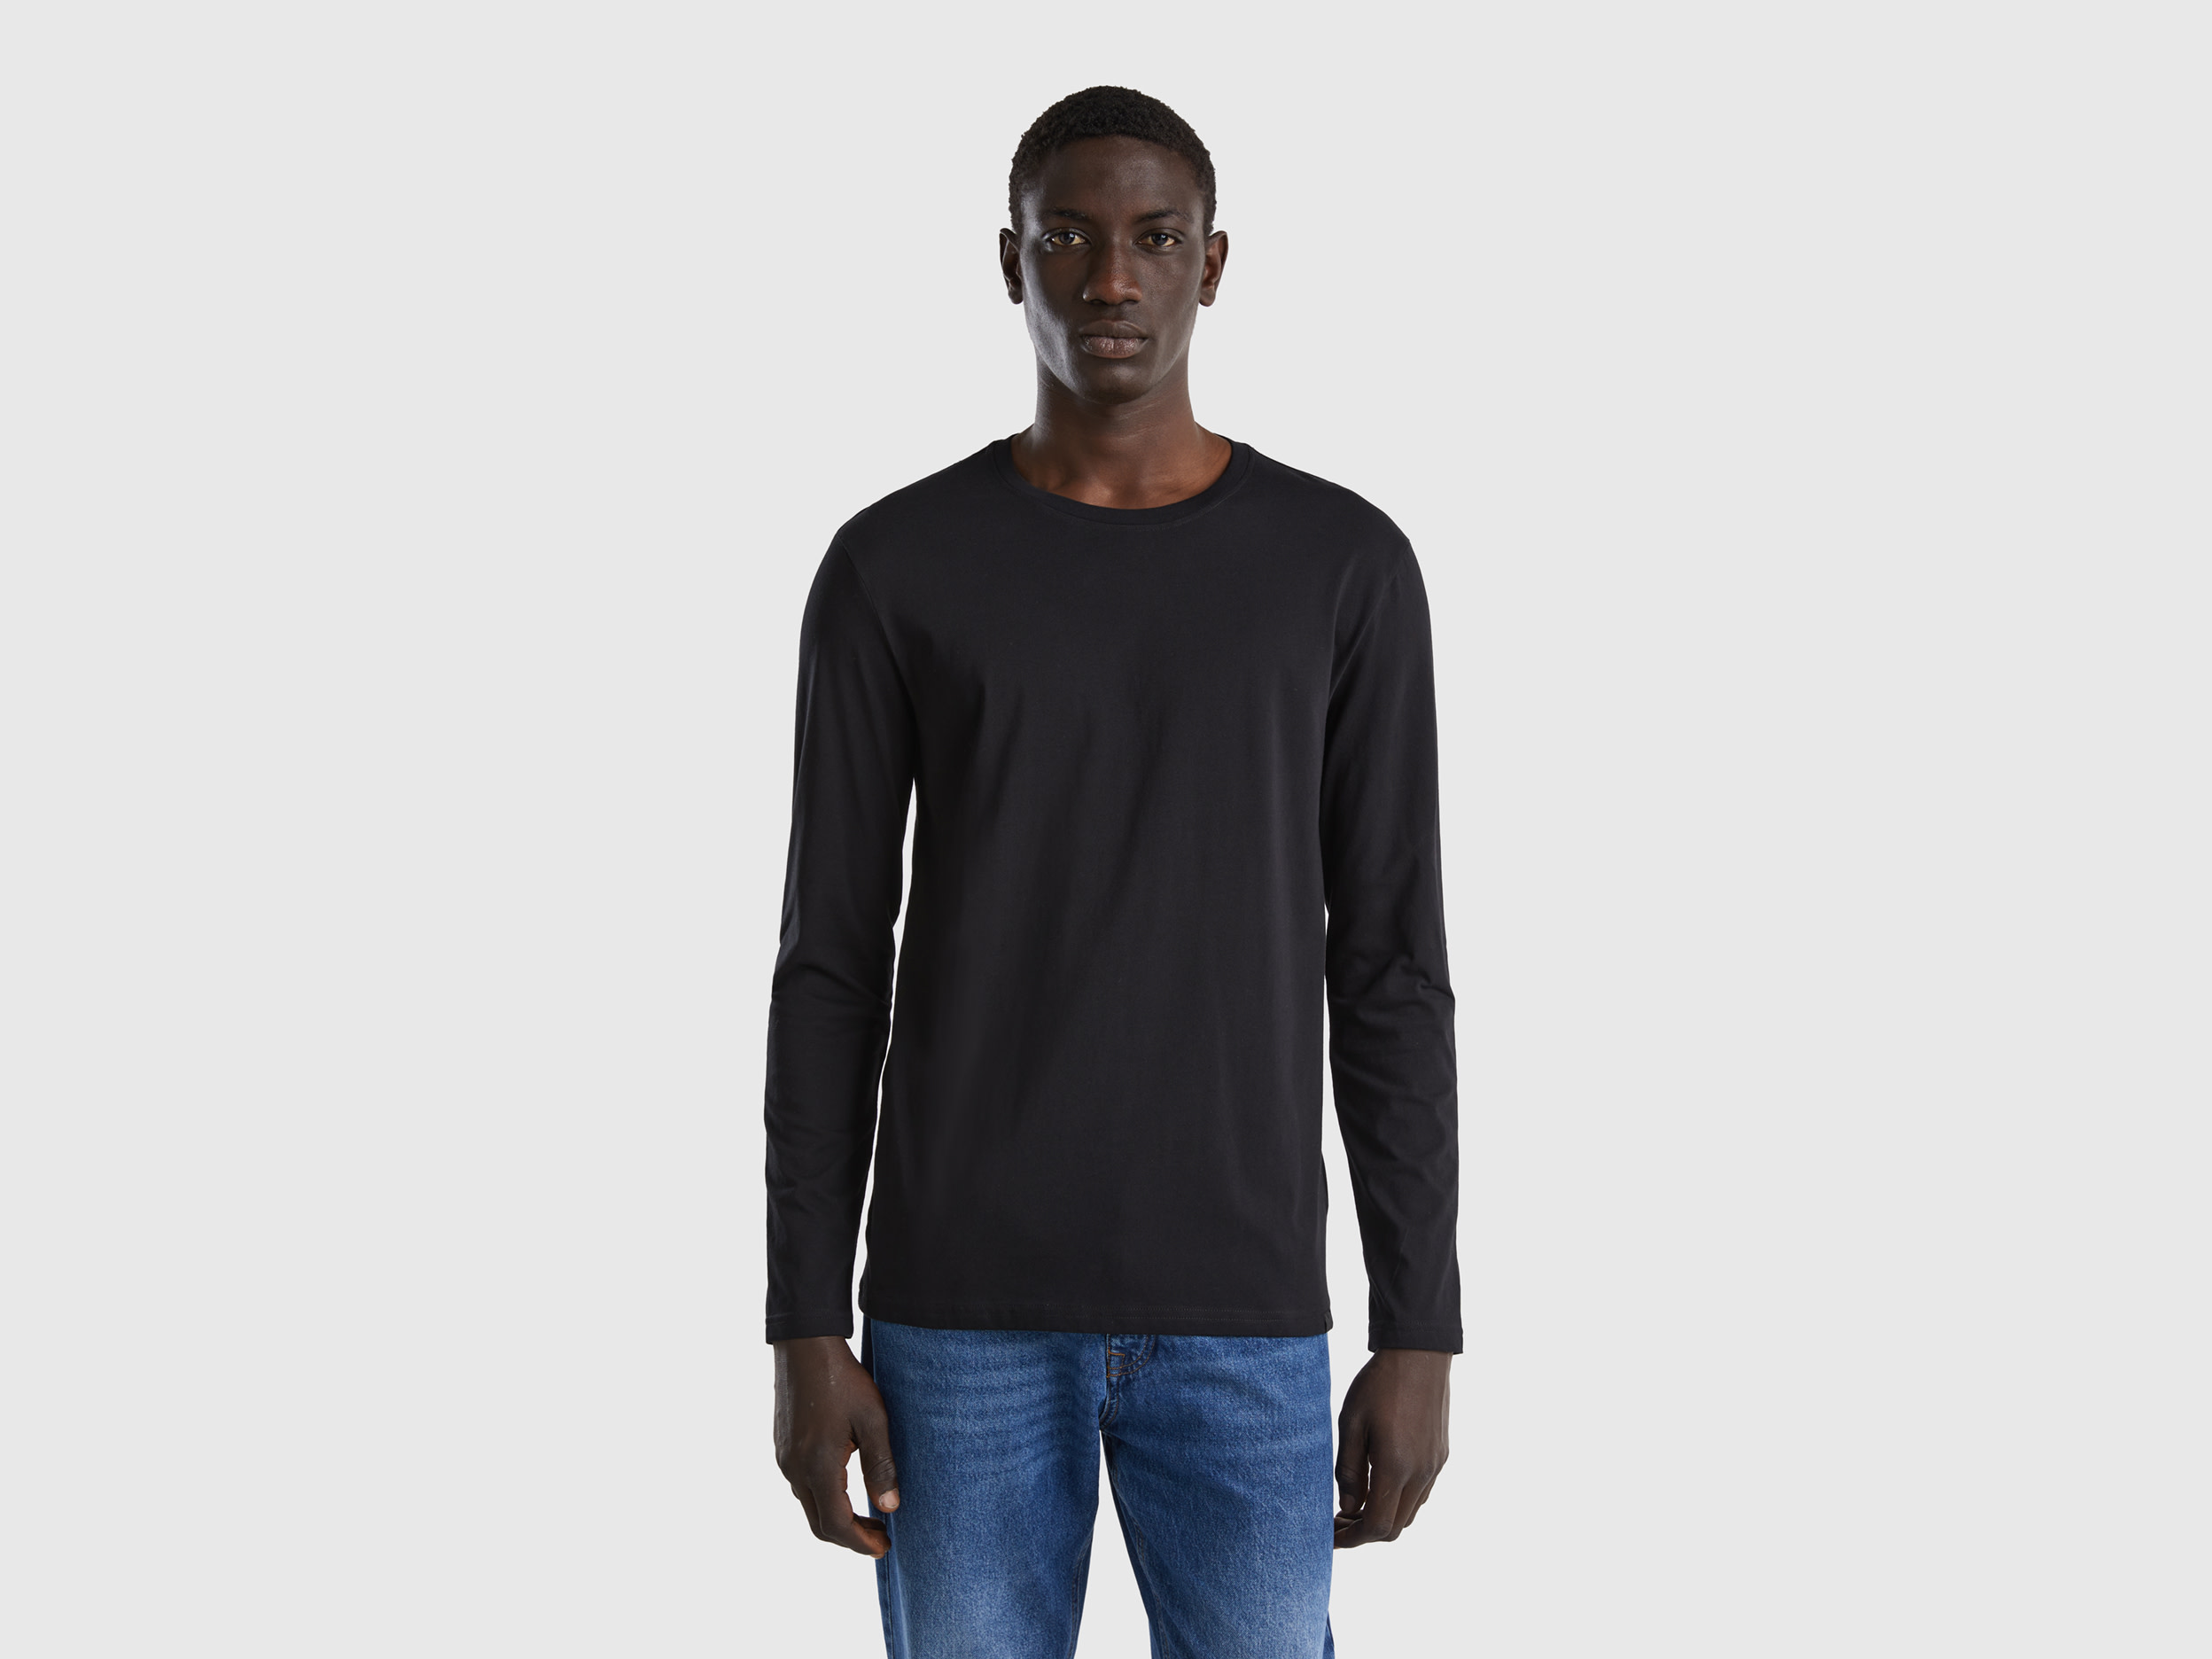 Benetton, Long Sleeve Pure Cotton T-shirt, size L, Black, Men